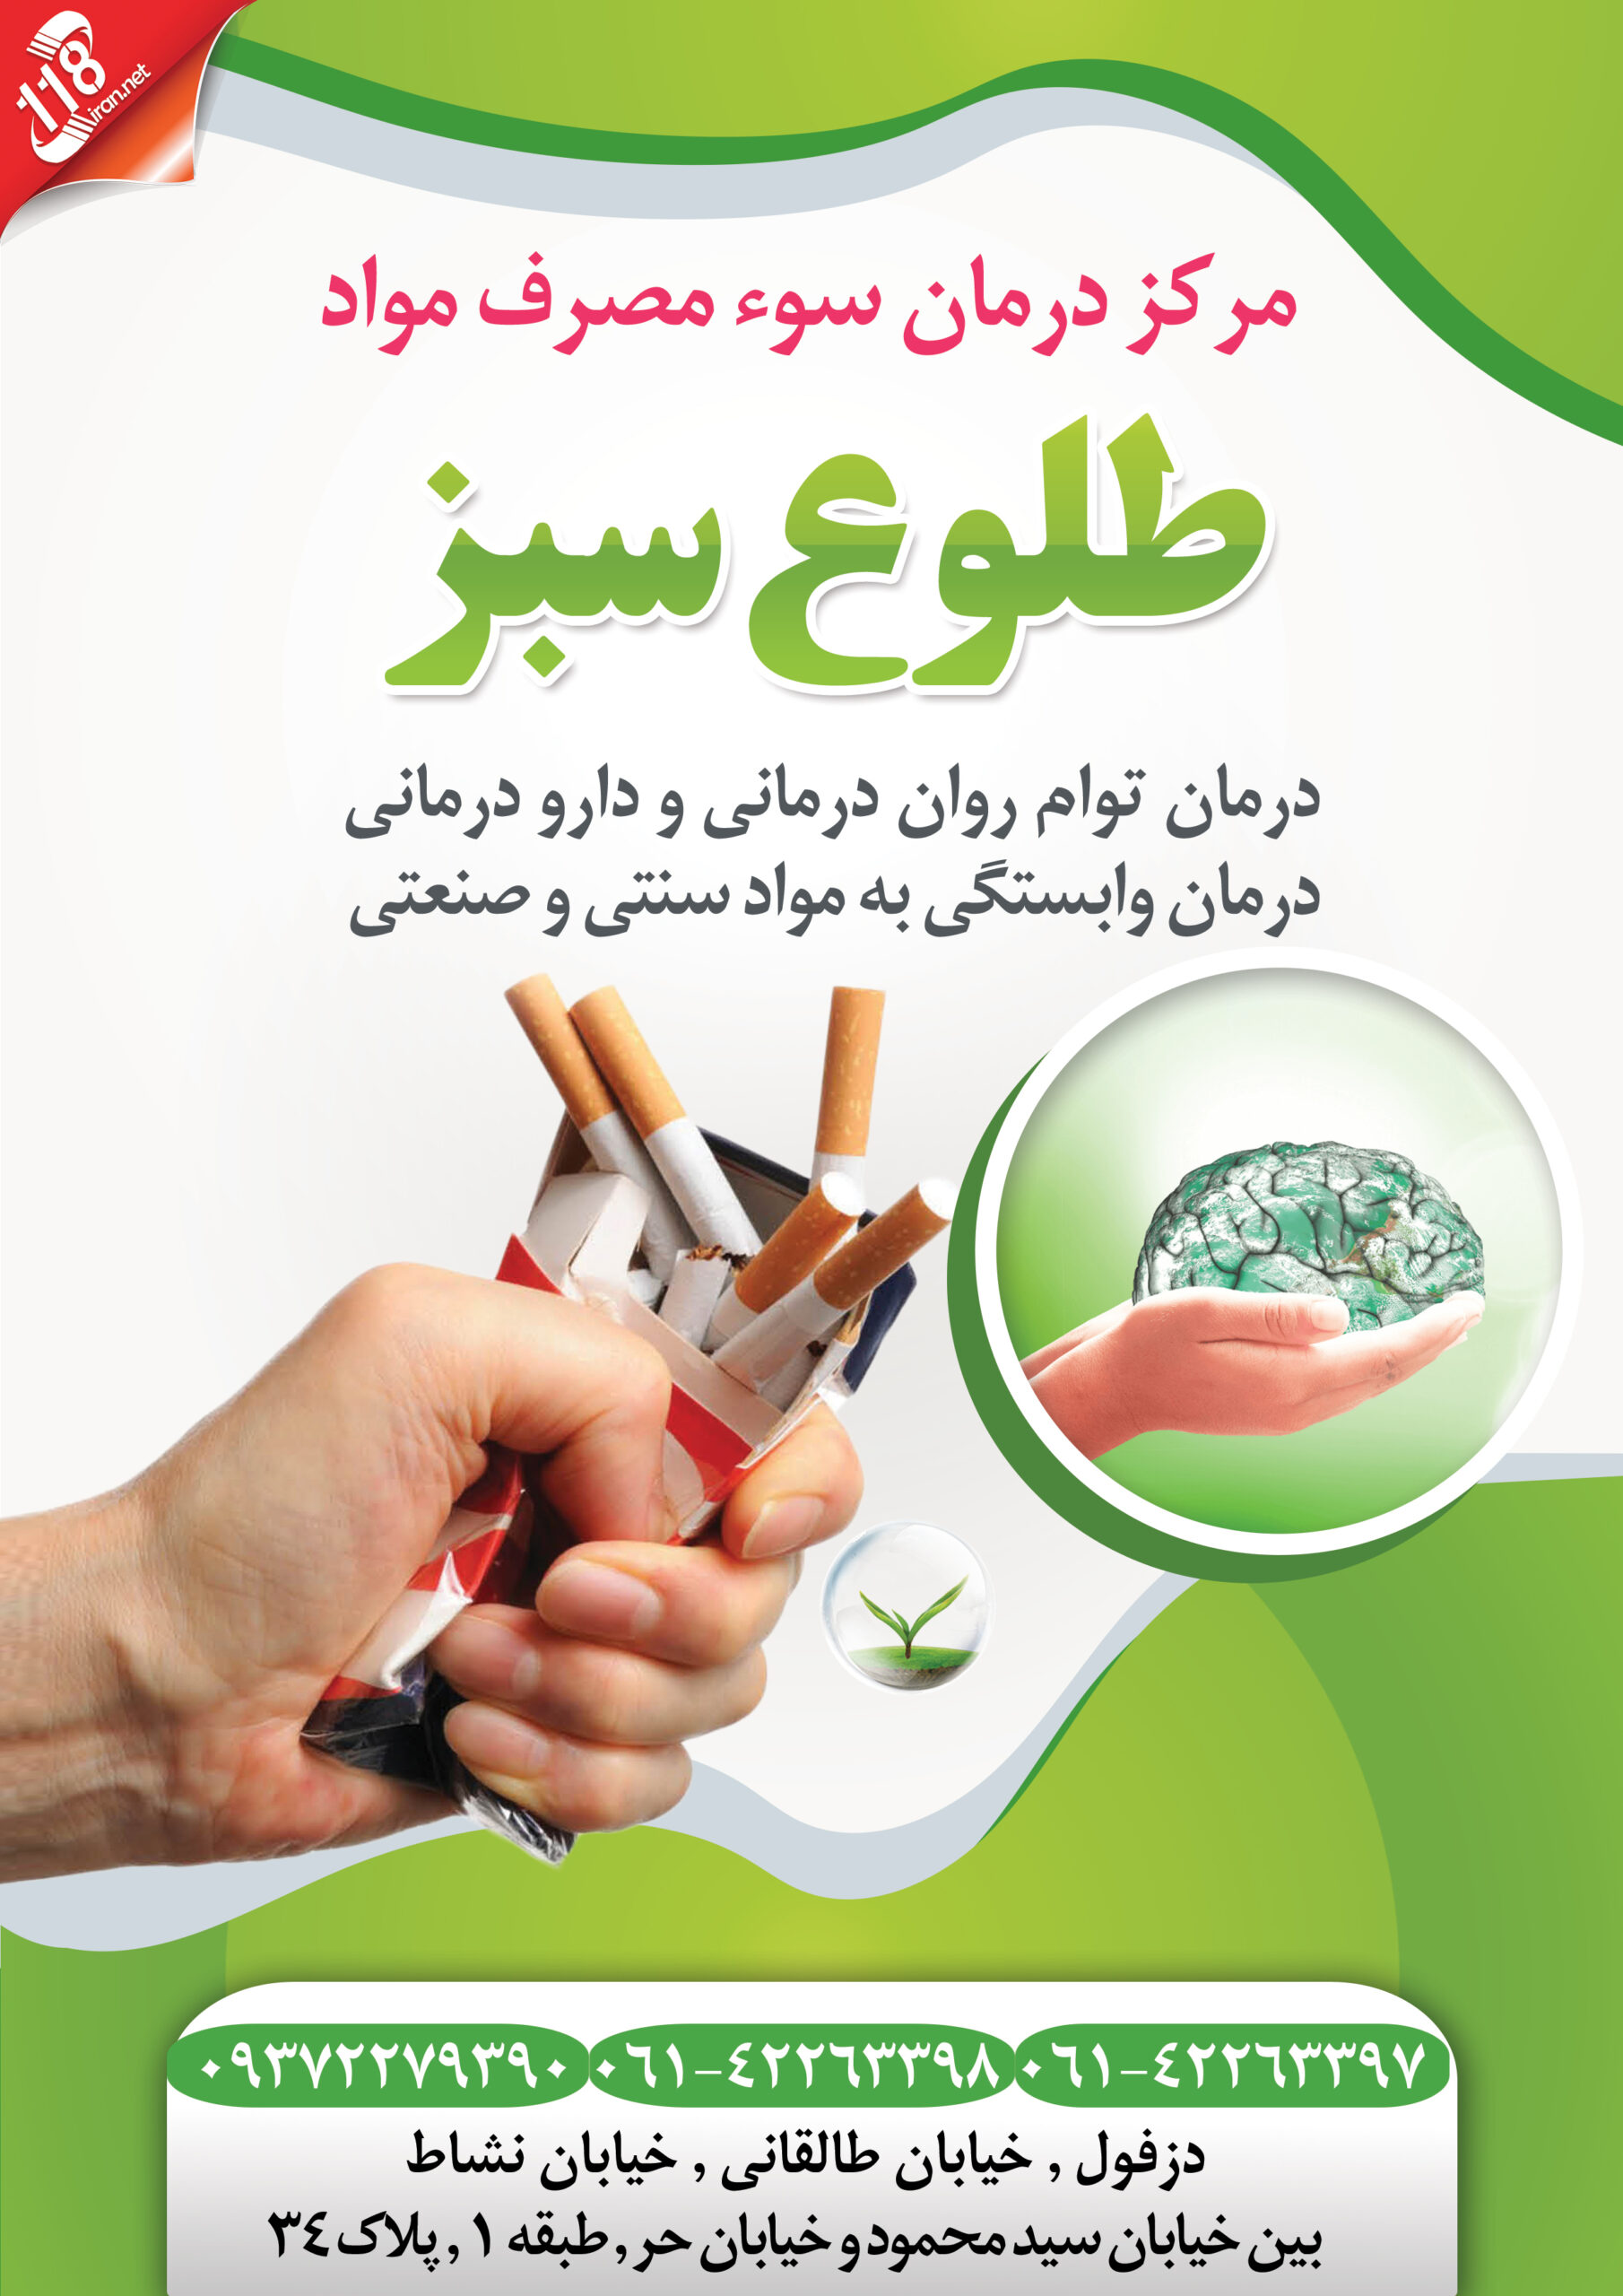  مرکز درمان سوء مصرف مواد طلوع سبز در دزفول 